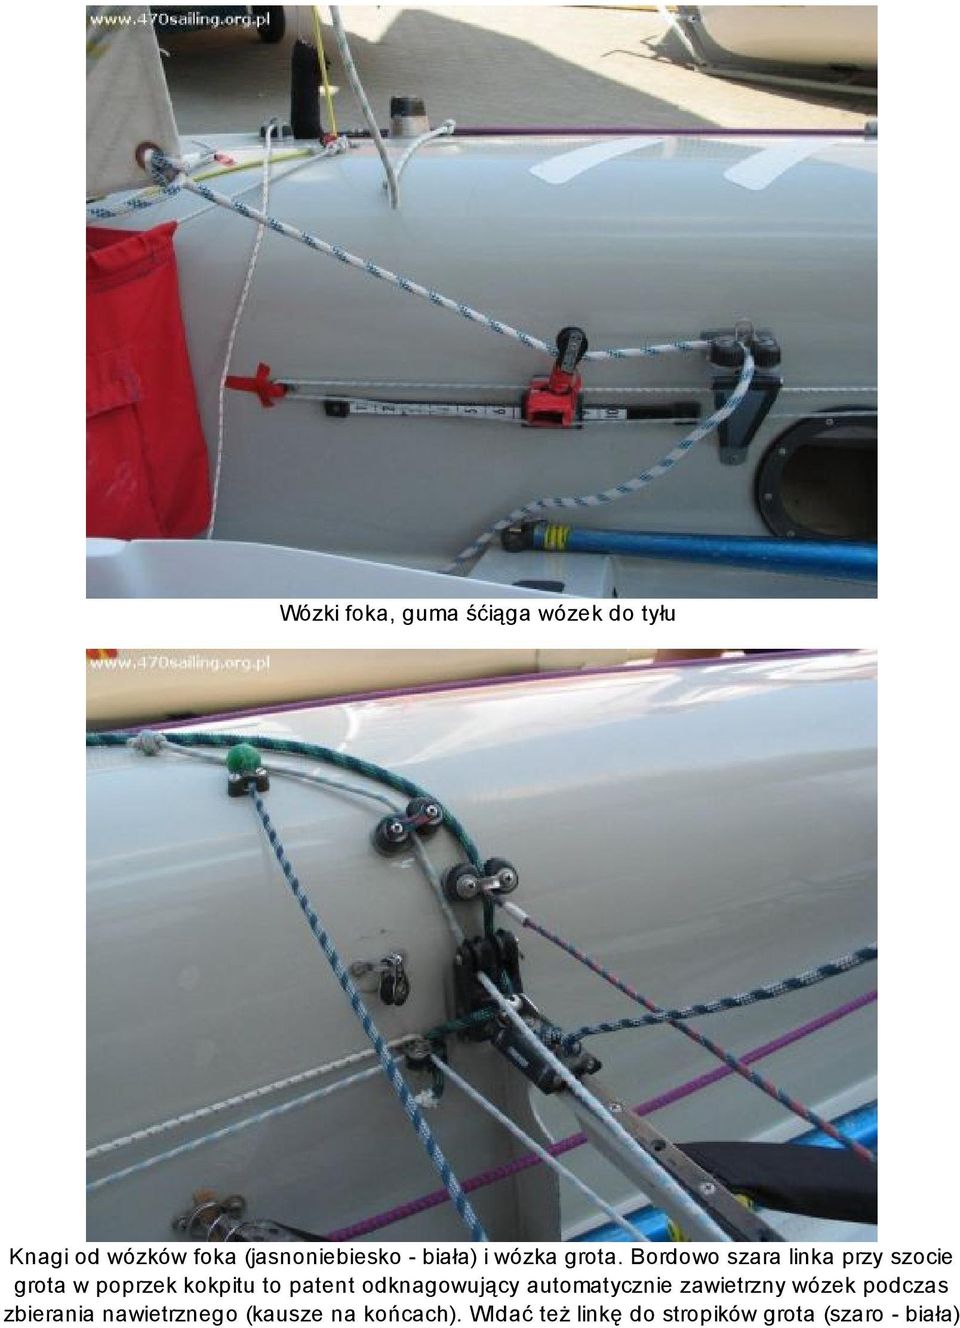 Bordowo szara linka przy szocie grota w poprzek kokpitu to patent